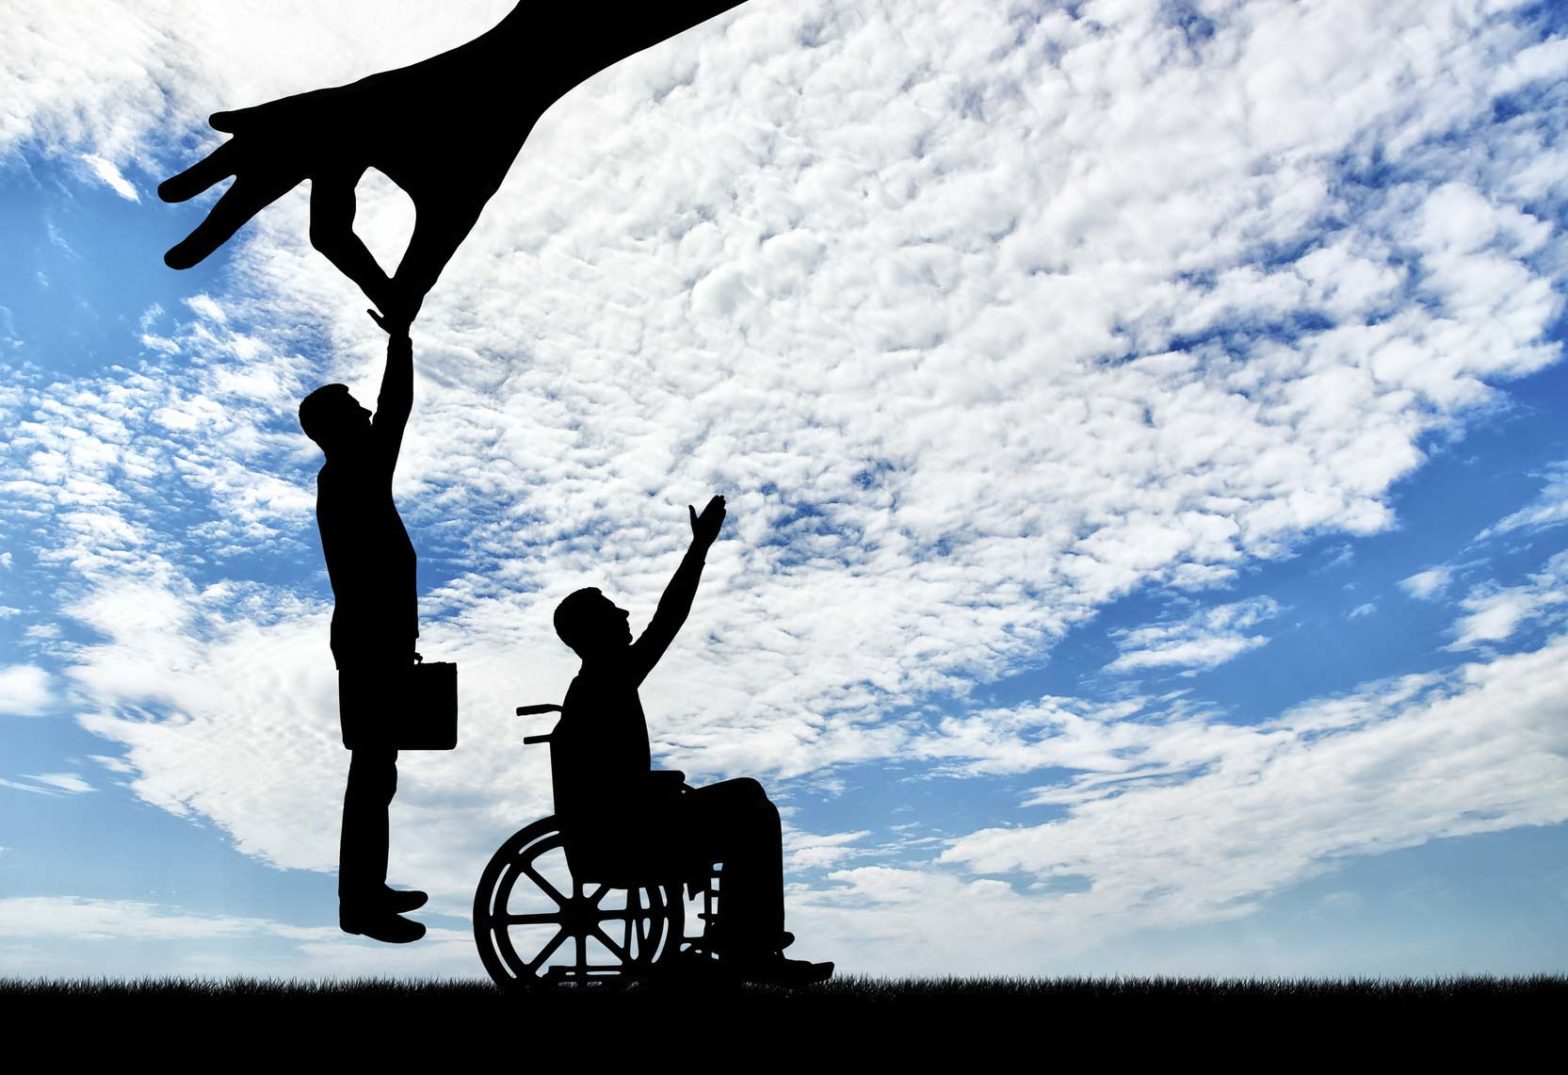 Dwa piktogramy ludzkie. Jeden to osoba na wózku z wyciągniętą ręką ku niebu, drugi przedstawia mężczyznę z teczką, unoszonego ku górze przez dłoń.